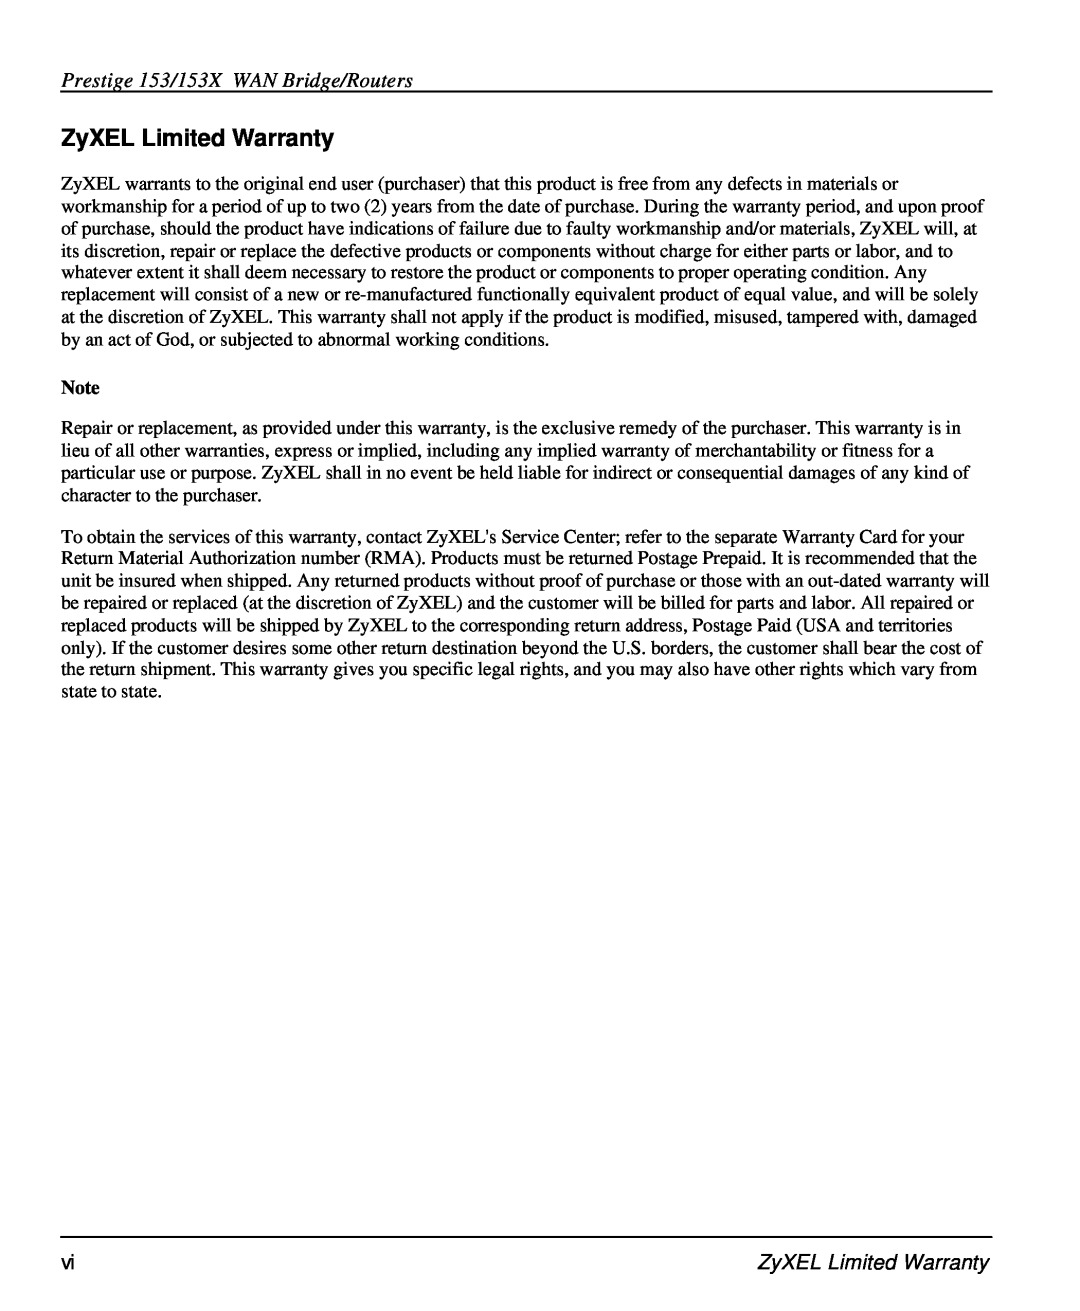 ZyXEL Communications user manual ZyXEL Limited Warranty, Prestige 153/153X WAN Bridge/Routers 